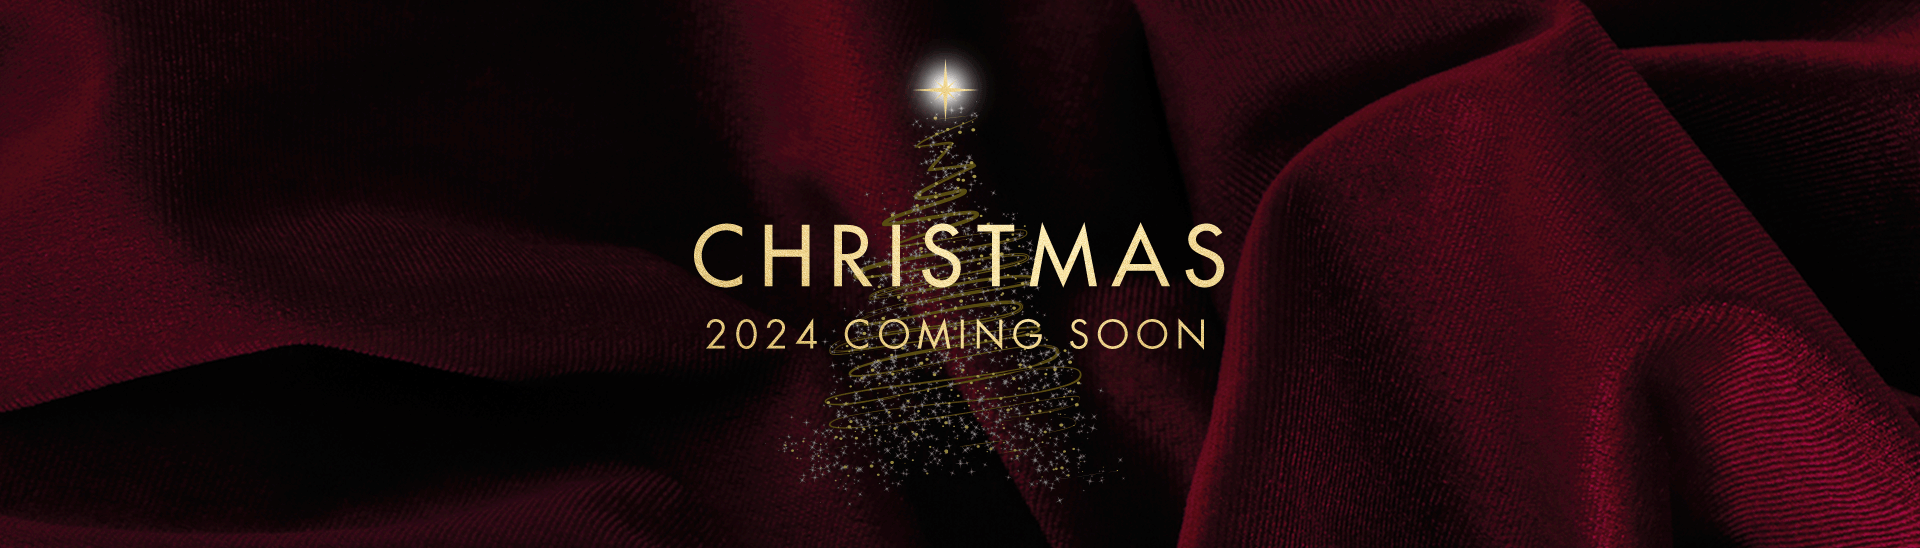 Christmas 2024 at Grantham